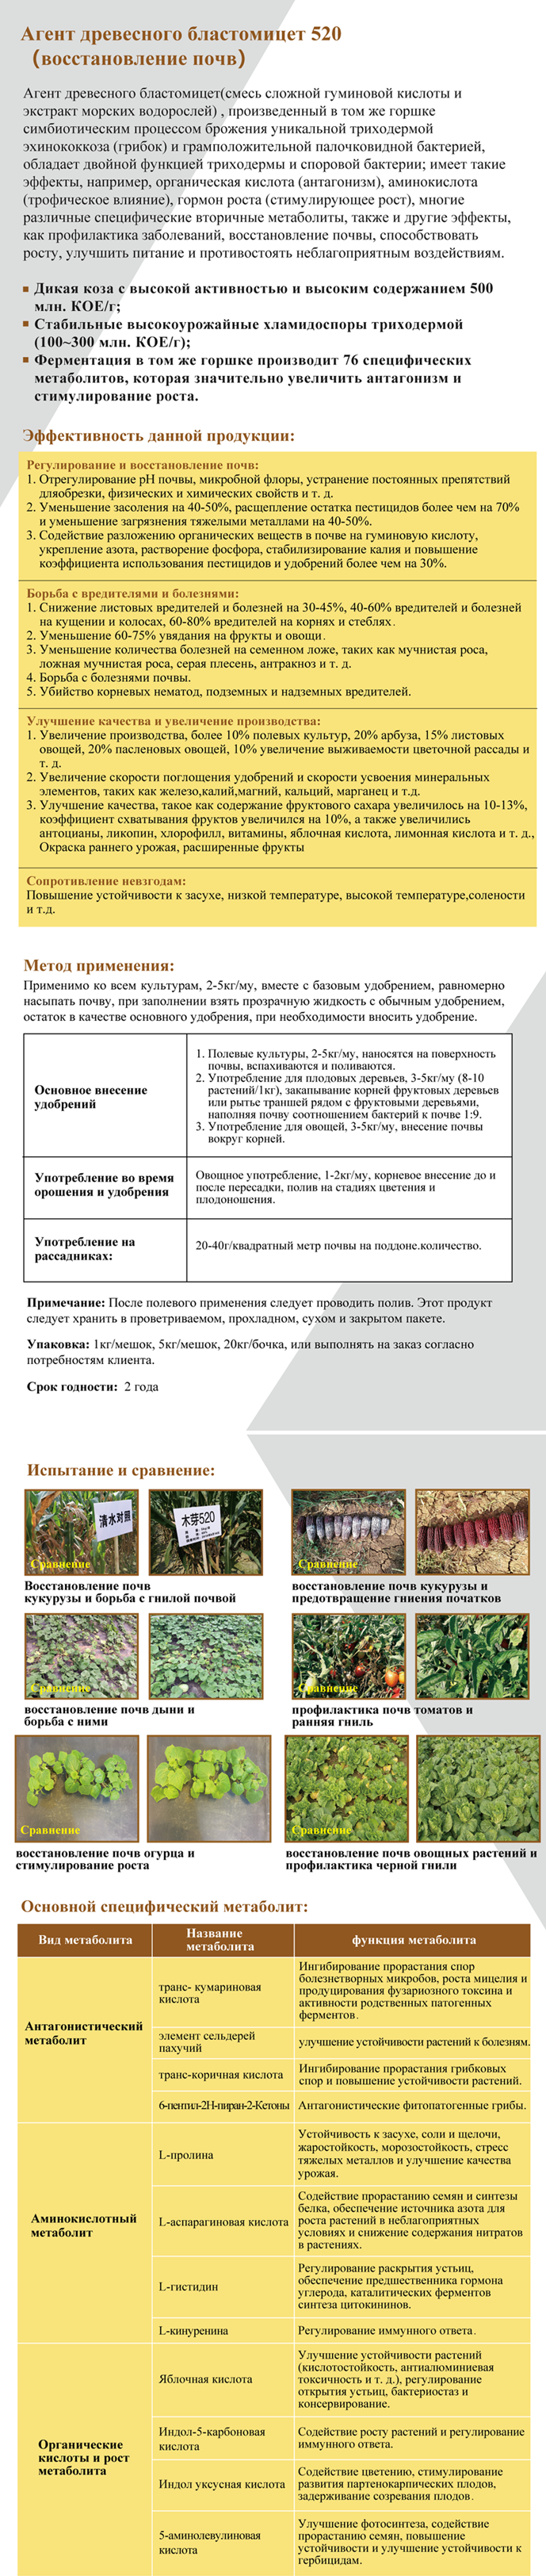 木芽520俄语网页版.png